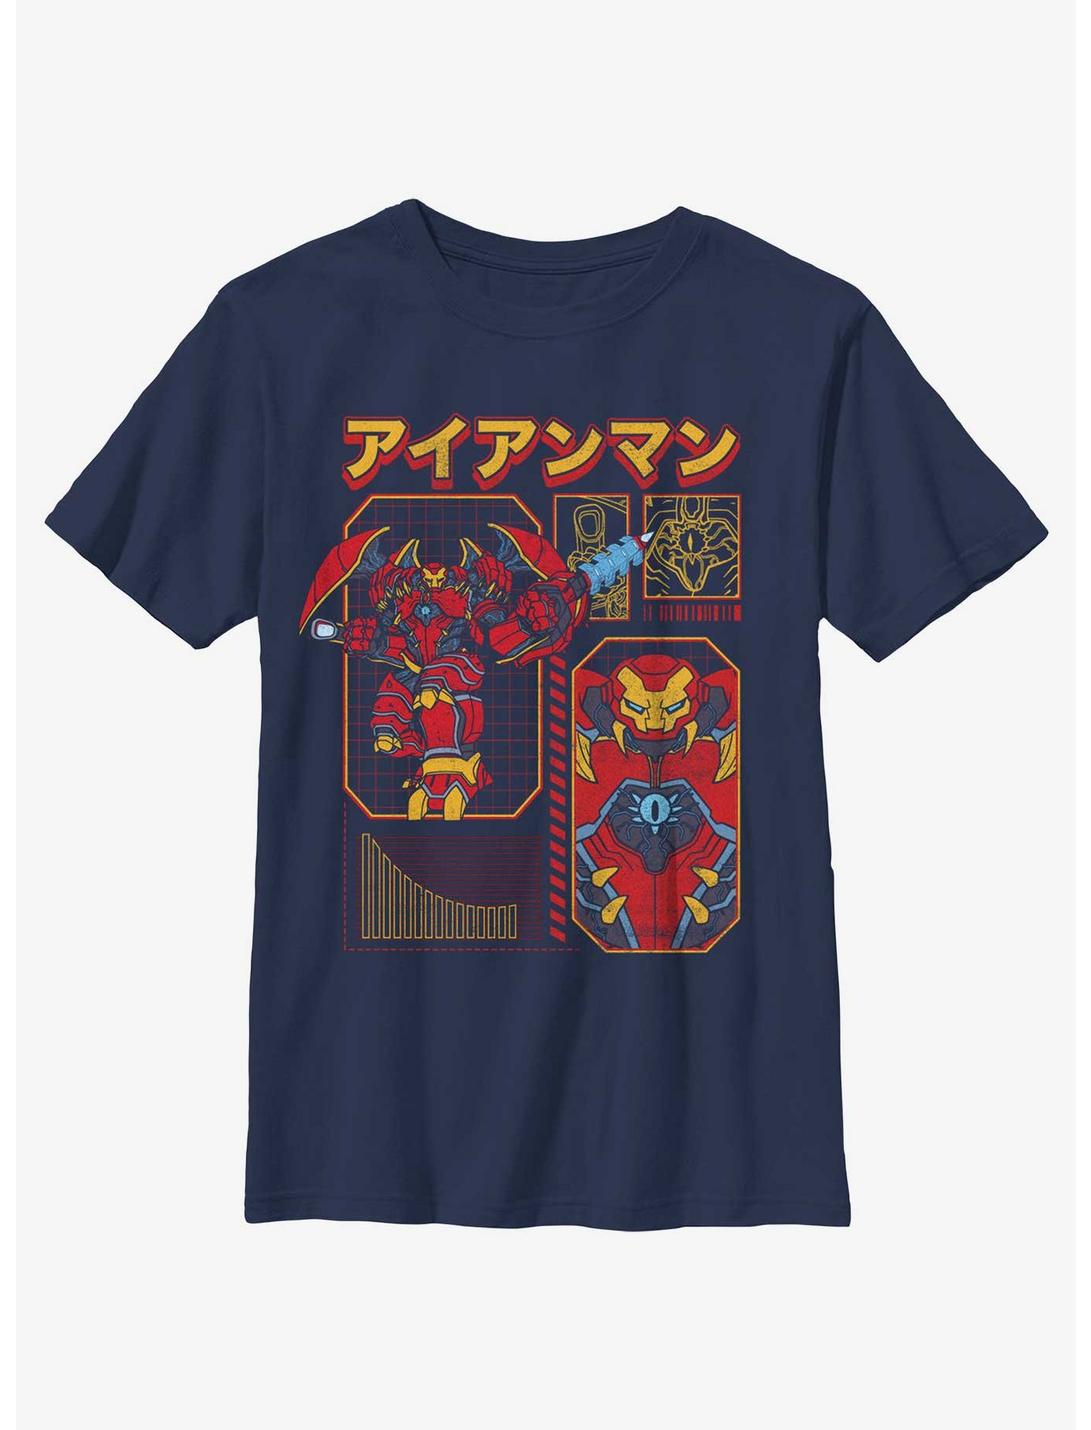 Marvel Avengers Iron Man Japanese Writing Youth T-Shirt, NAVY, hi-res